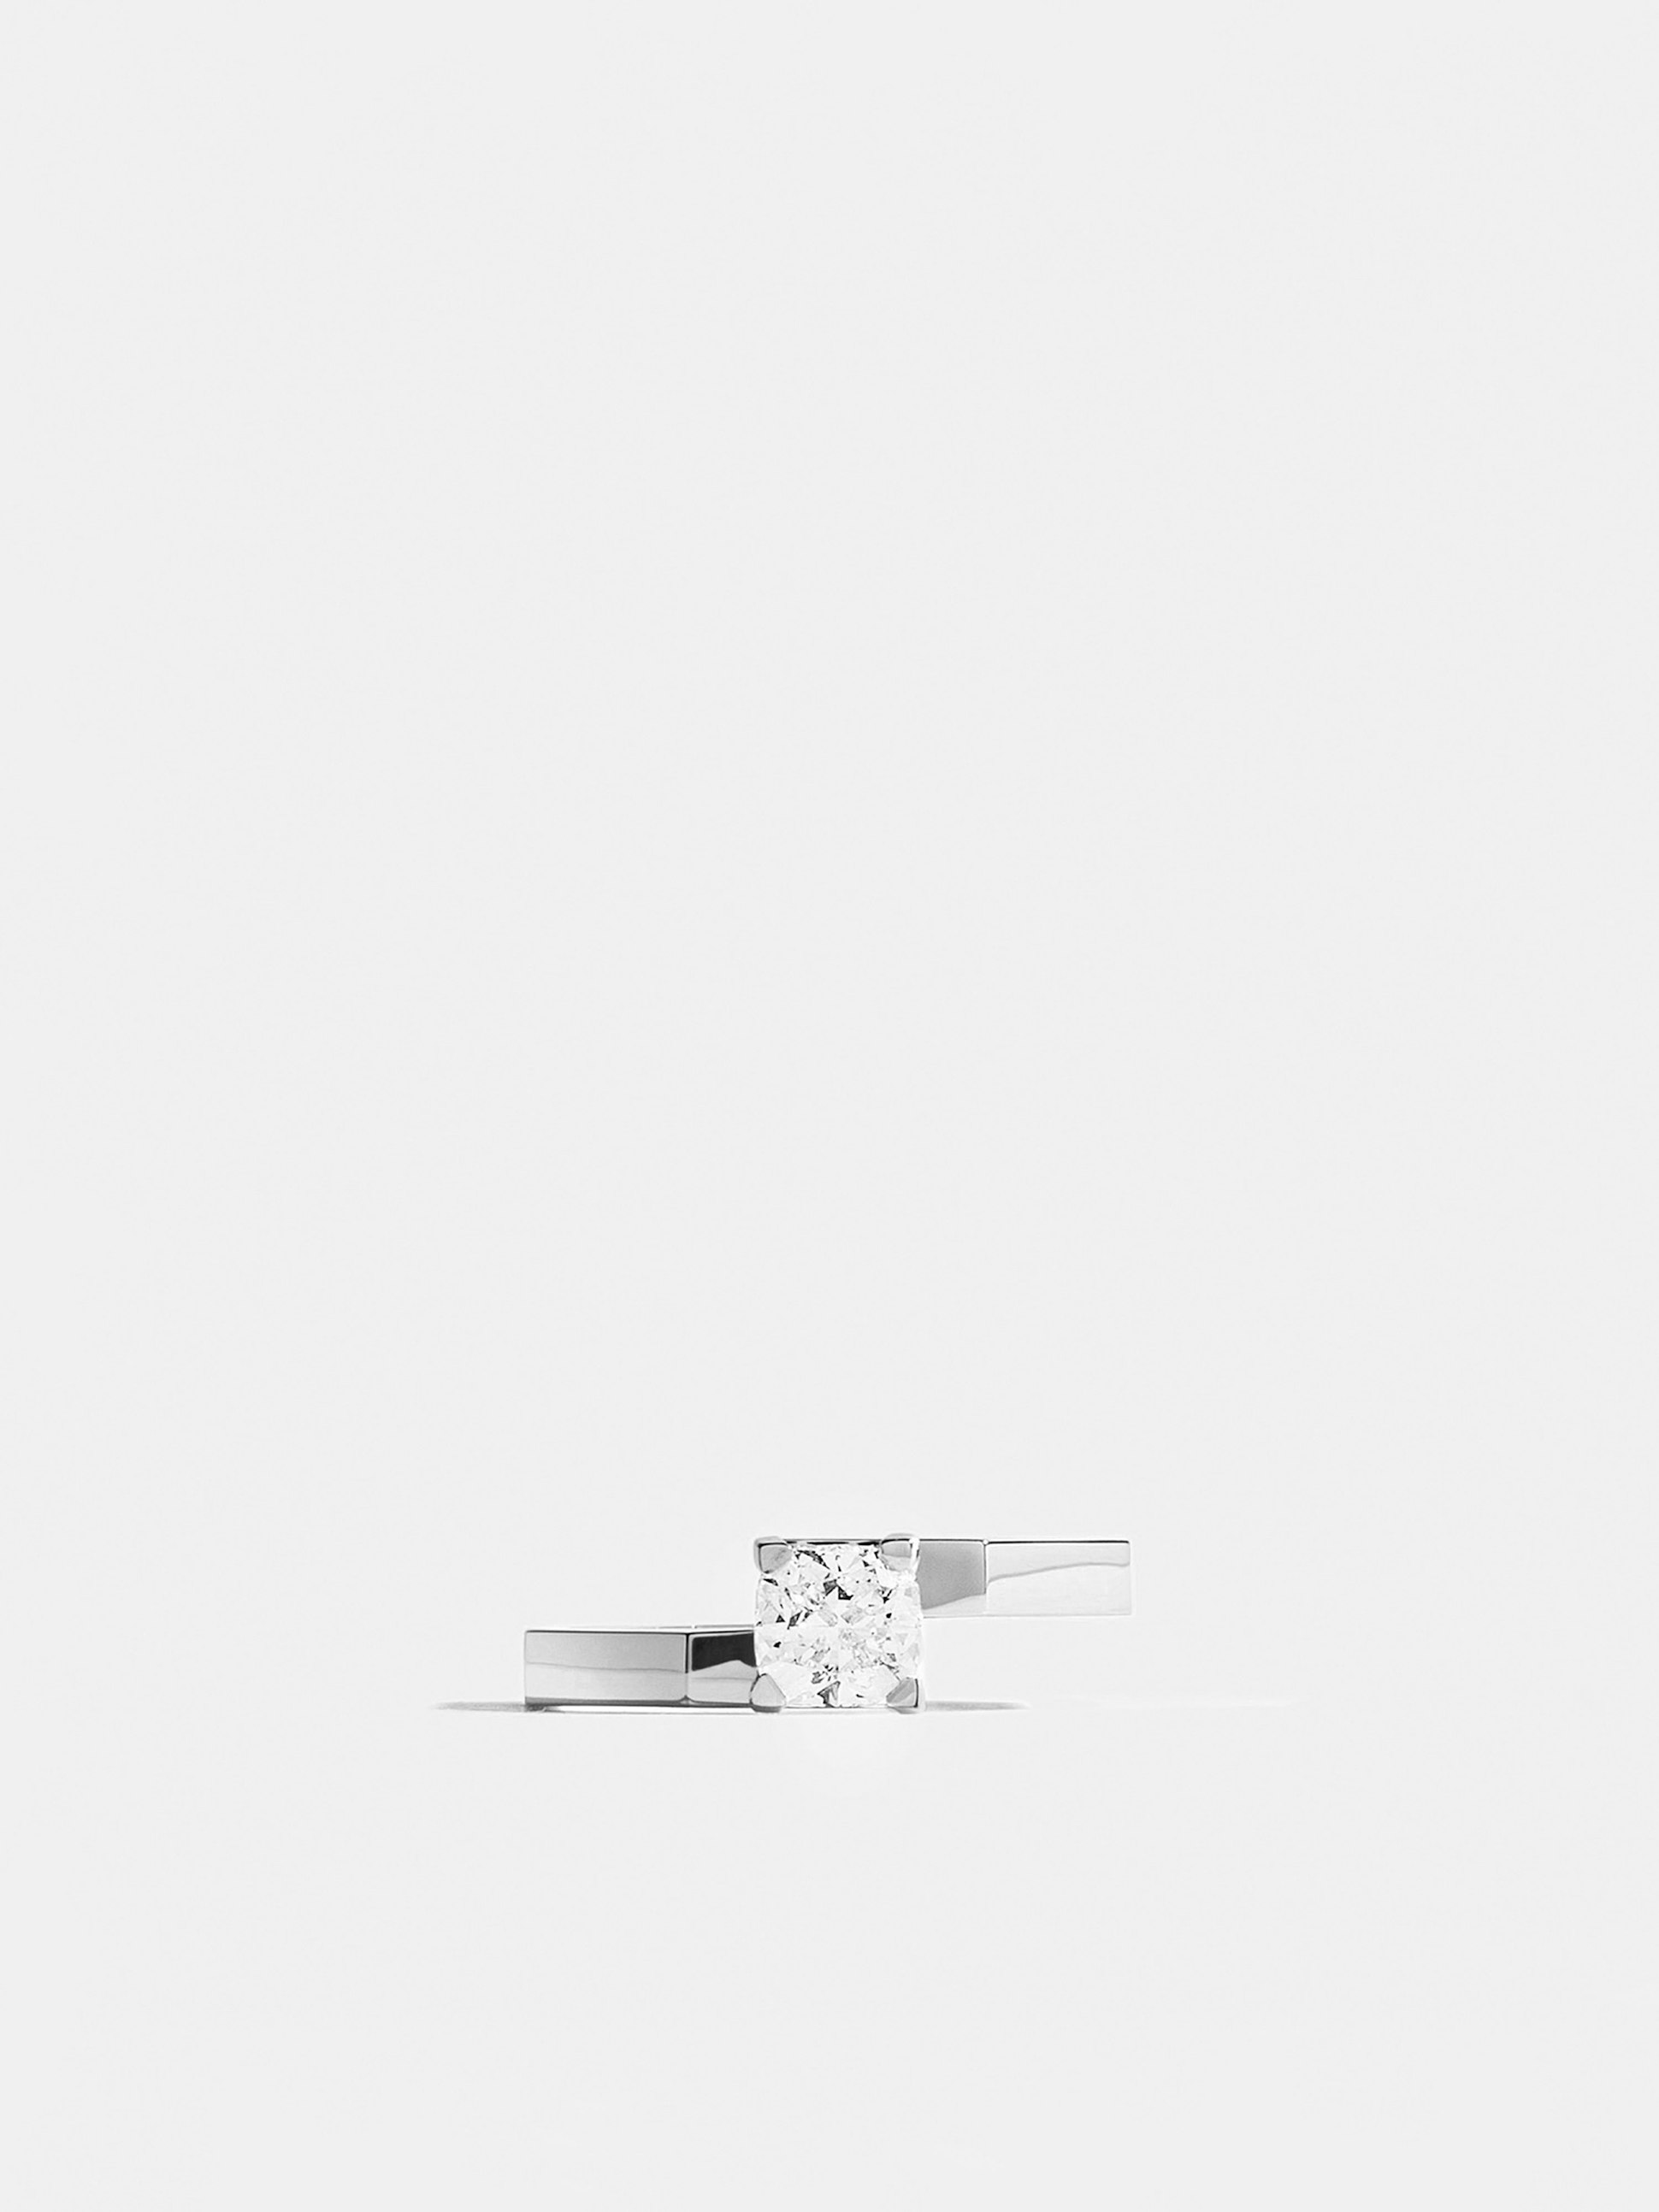 Solitaire Octogone en Or blanc éthique 18 carats certifié Fairmined serti d'un diamant de synthèse taille coussin de 0,7 carat (qualité GVS).